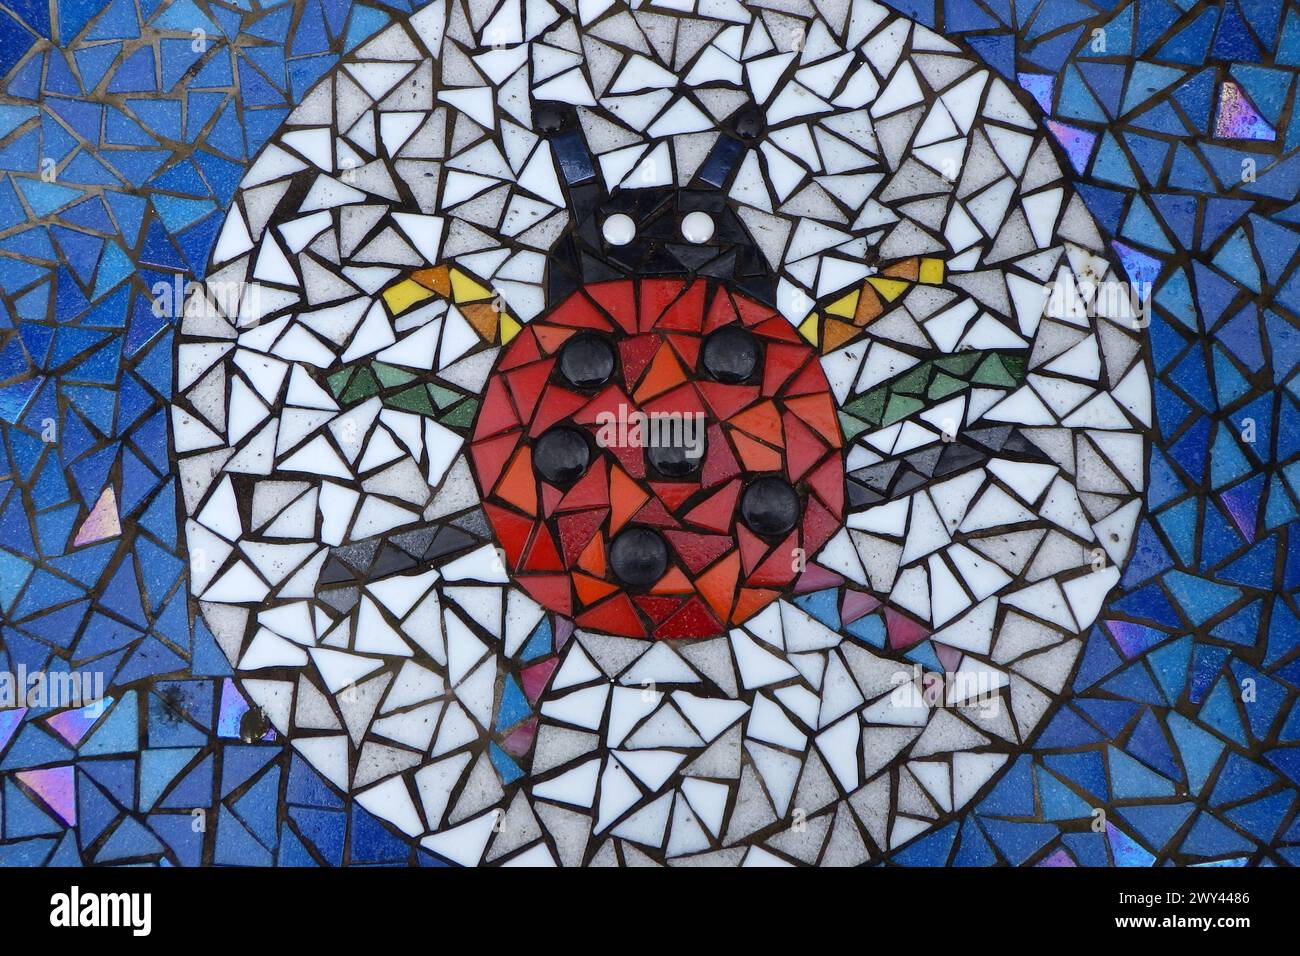 Vasse, pays-Bas - mars 29 2024 Une coccinelle dans des carreaux de mosaïque colorés. Il fait partie d'un banc de mosaïque public debout au milieu du village Vasse Banque D'Images